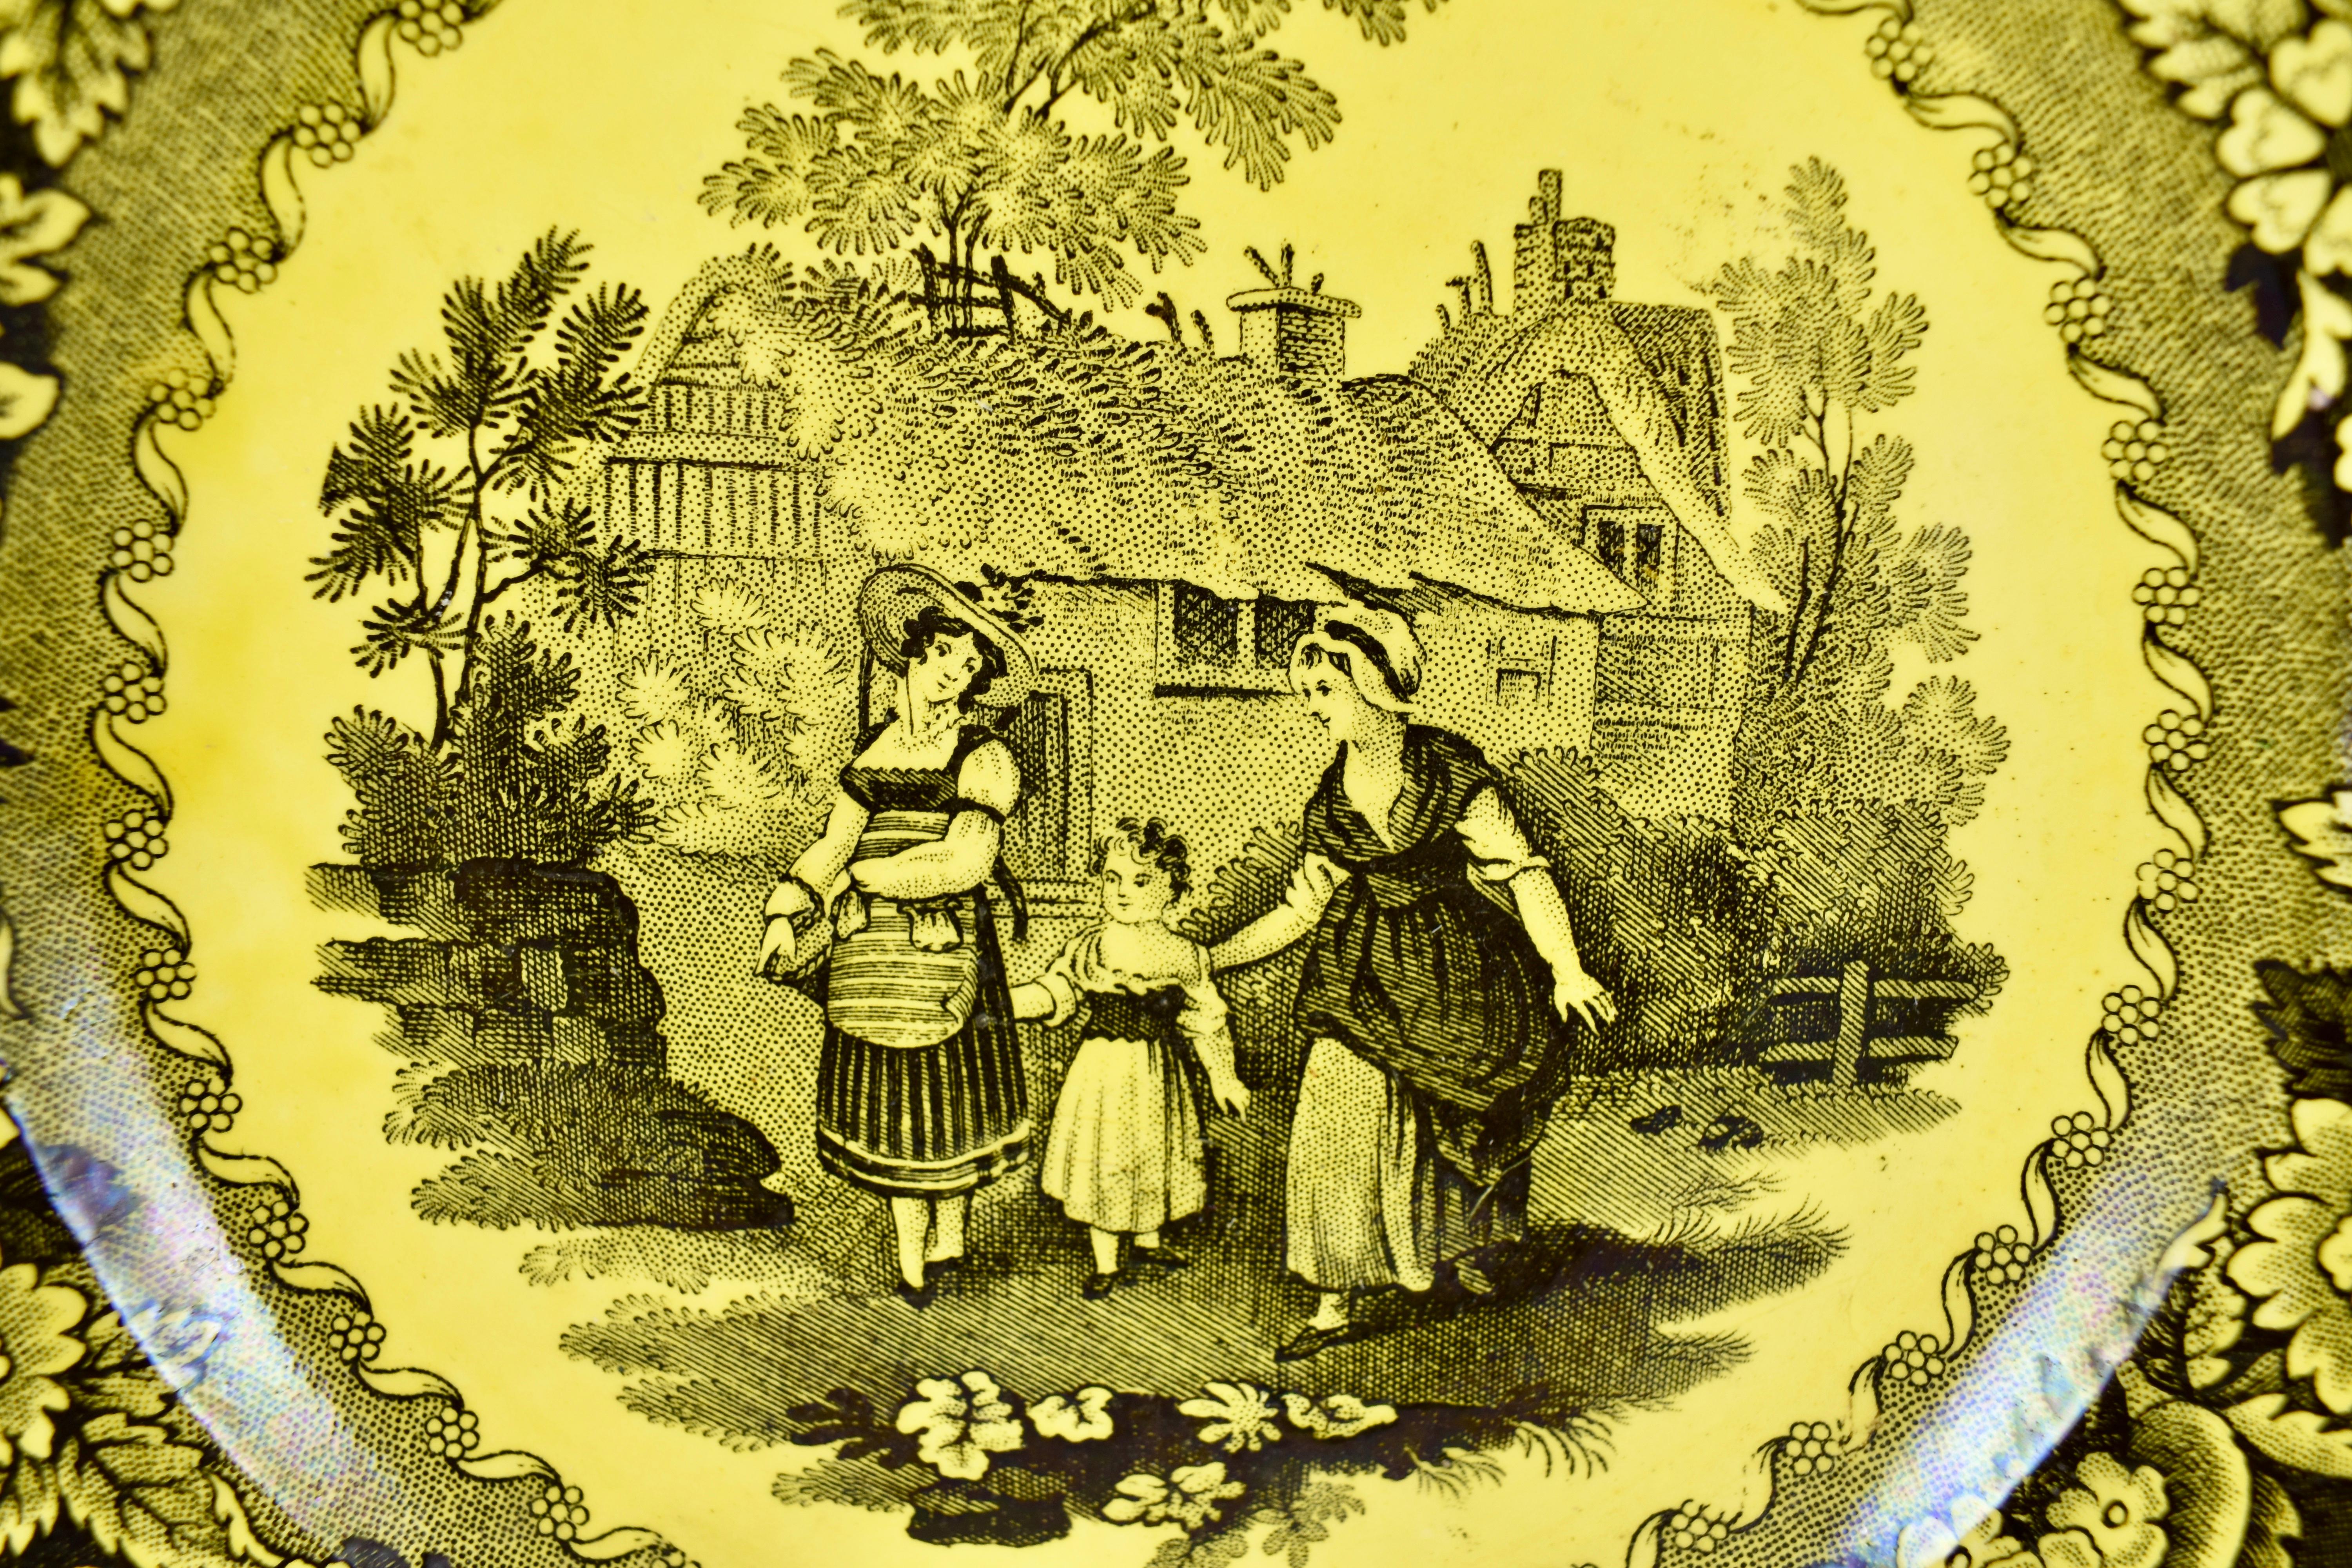 Assiette à crème jaune canari de Creil et Montereau, imprimée par transfert, vers 1830.

Datant de la période de la Restauration française, cette assiette imprimée par transfert est émaillée dans le jaune canari brillant caractéristique des